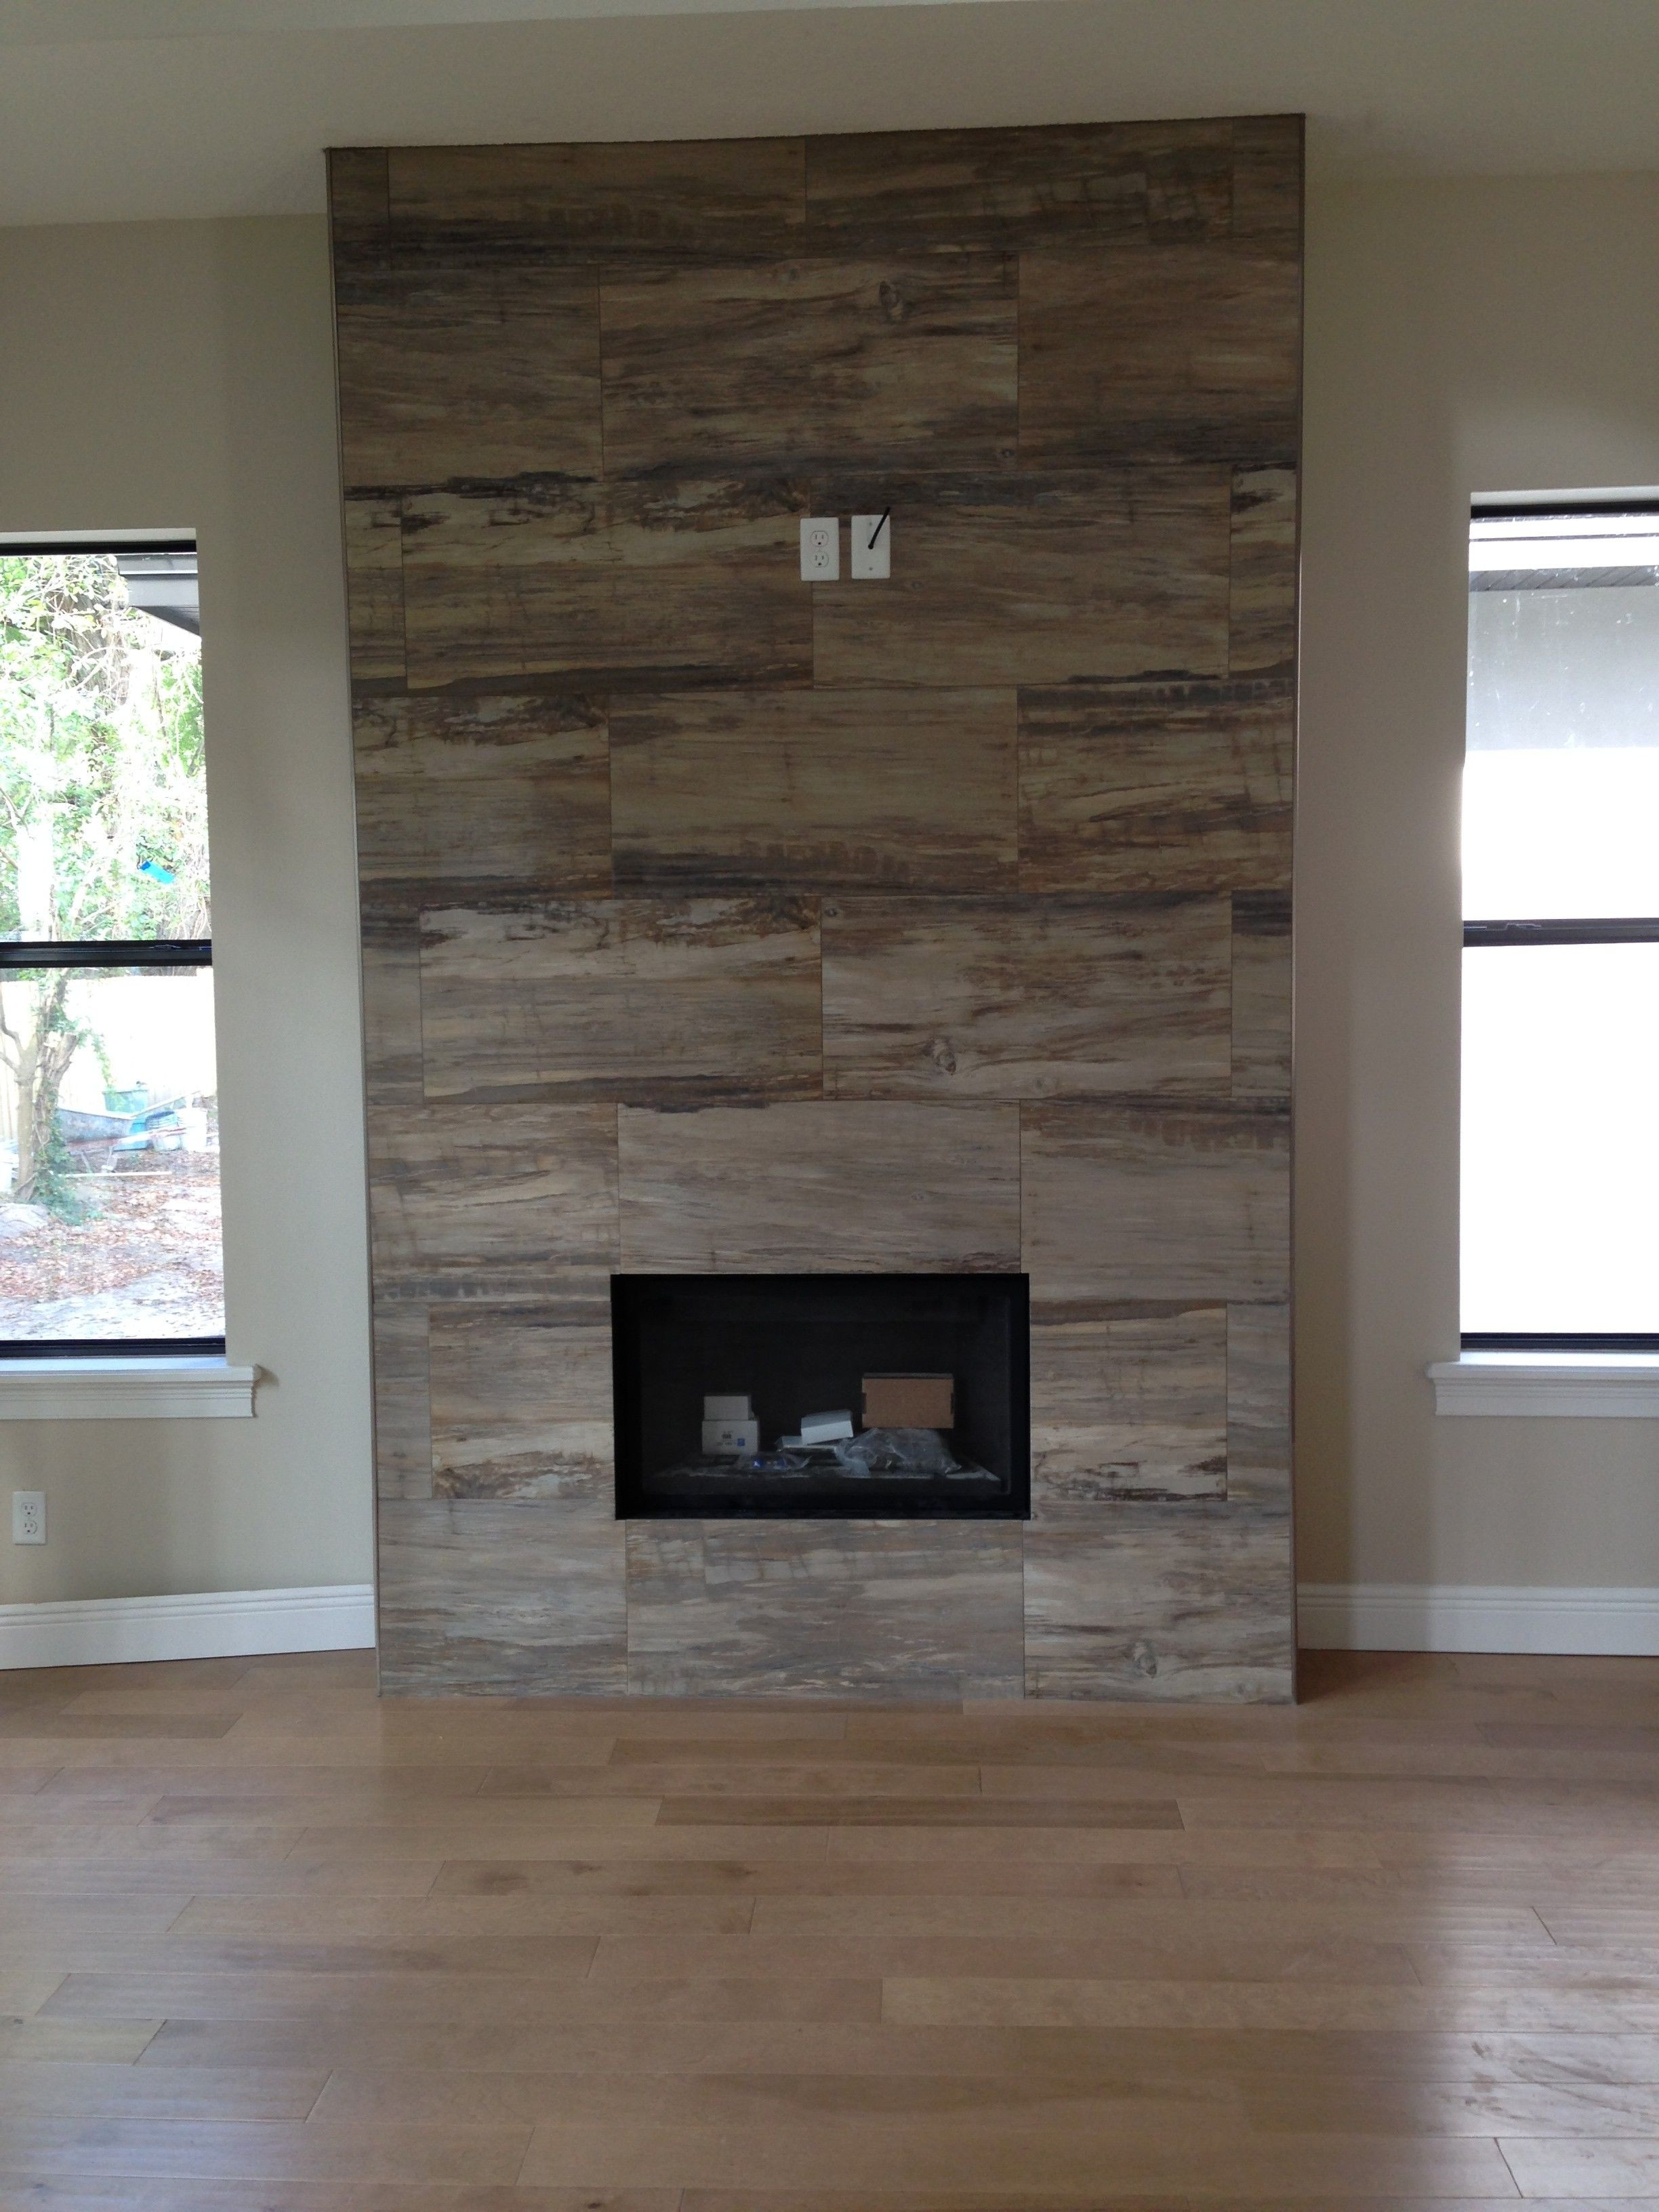 Southwest Brick and Fireplace Elegant 22 Amazing Ta A Hardwood Floors